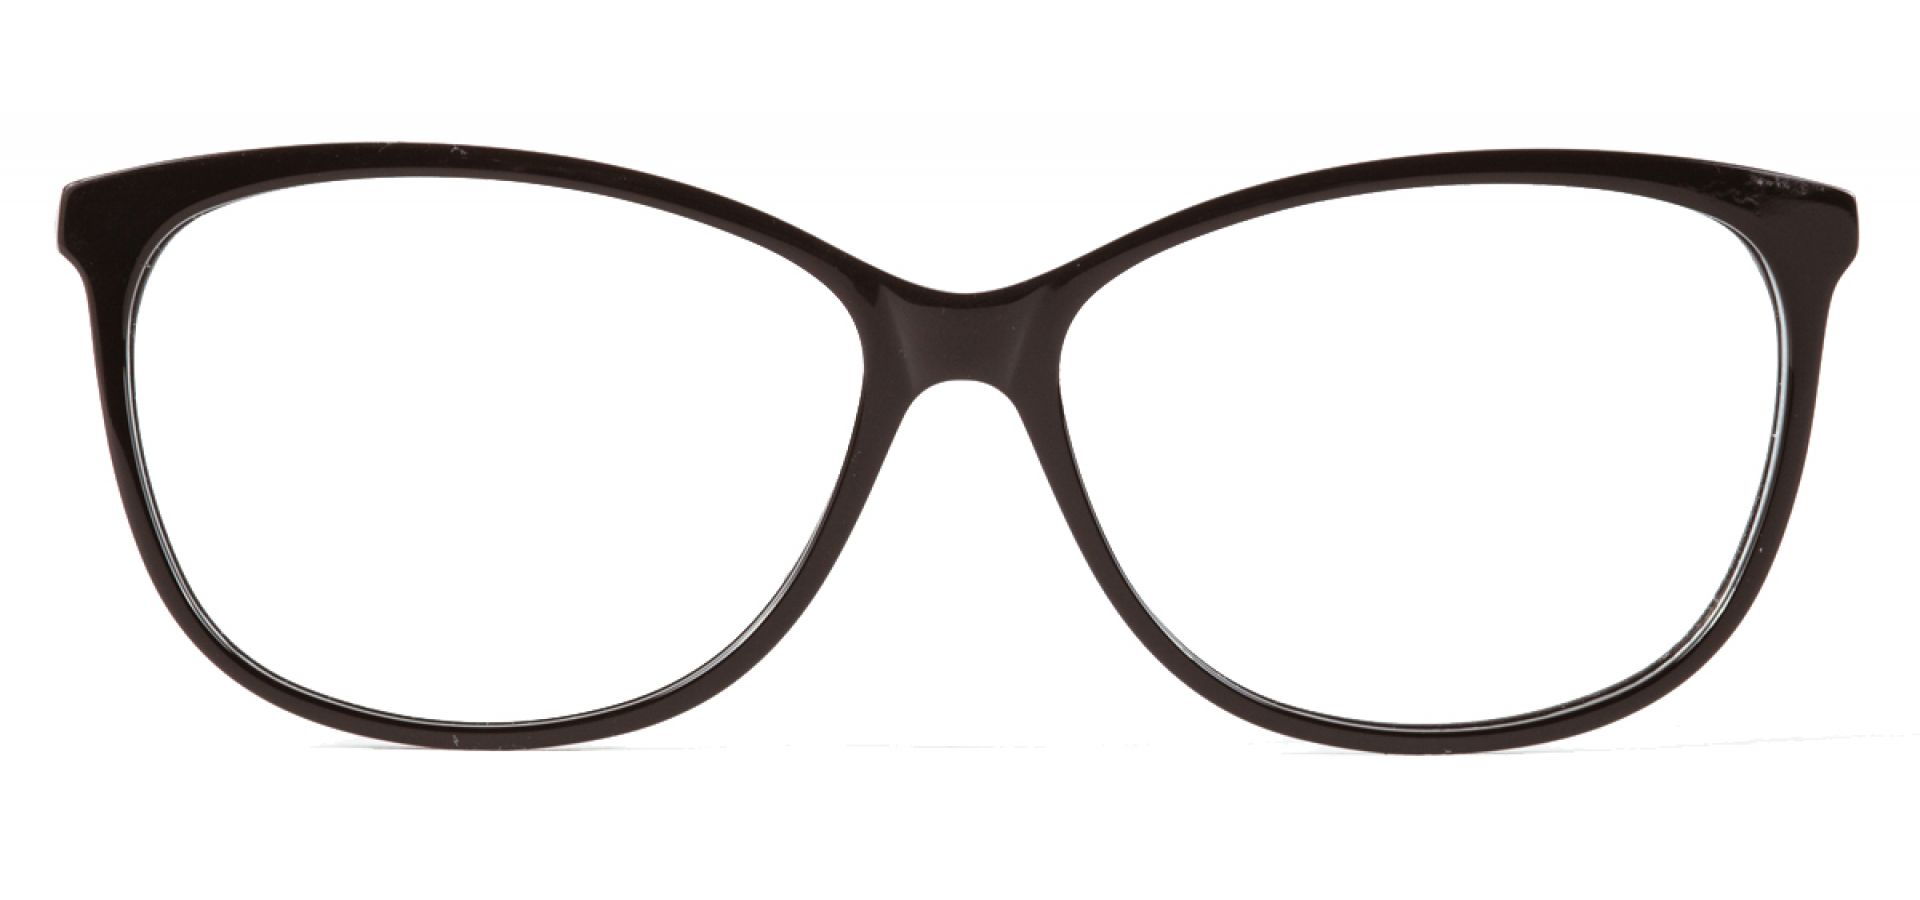 Dioptrijske naočale Ghetaldus NAOČALE ZA RAČUNALO GHB119: Boja: Black White, Veličina: 54/16/140, Spol: ženske, Materijal: acetat